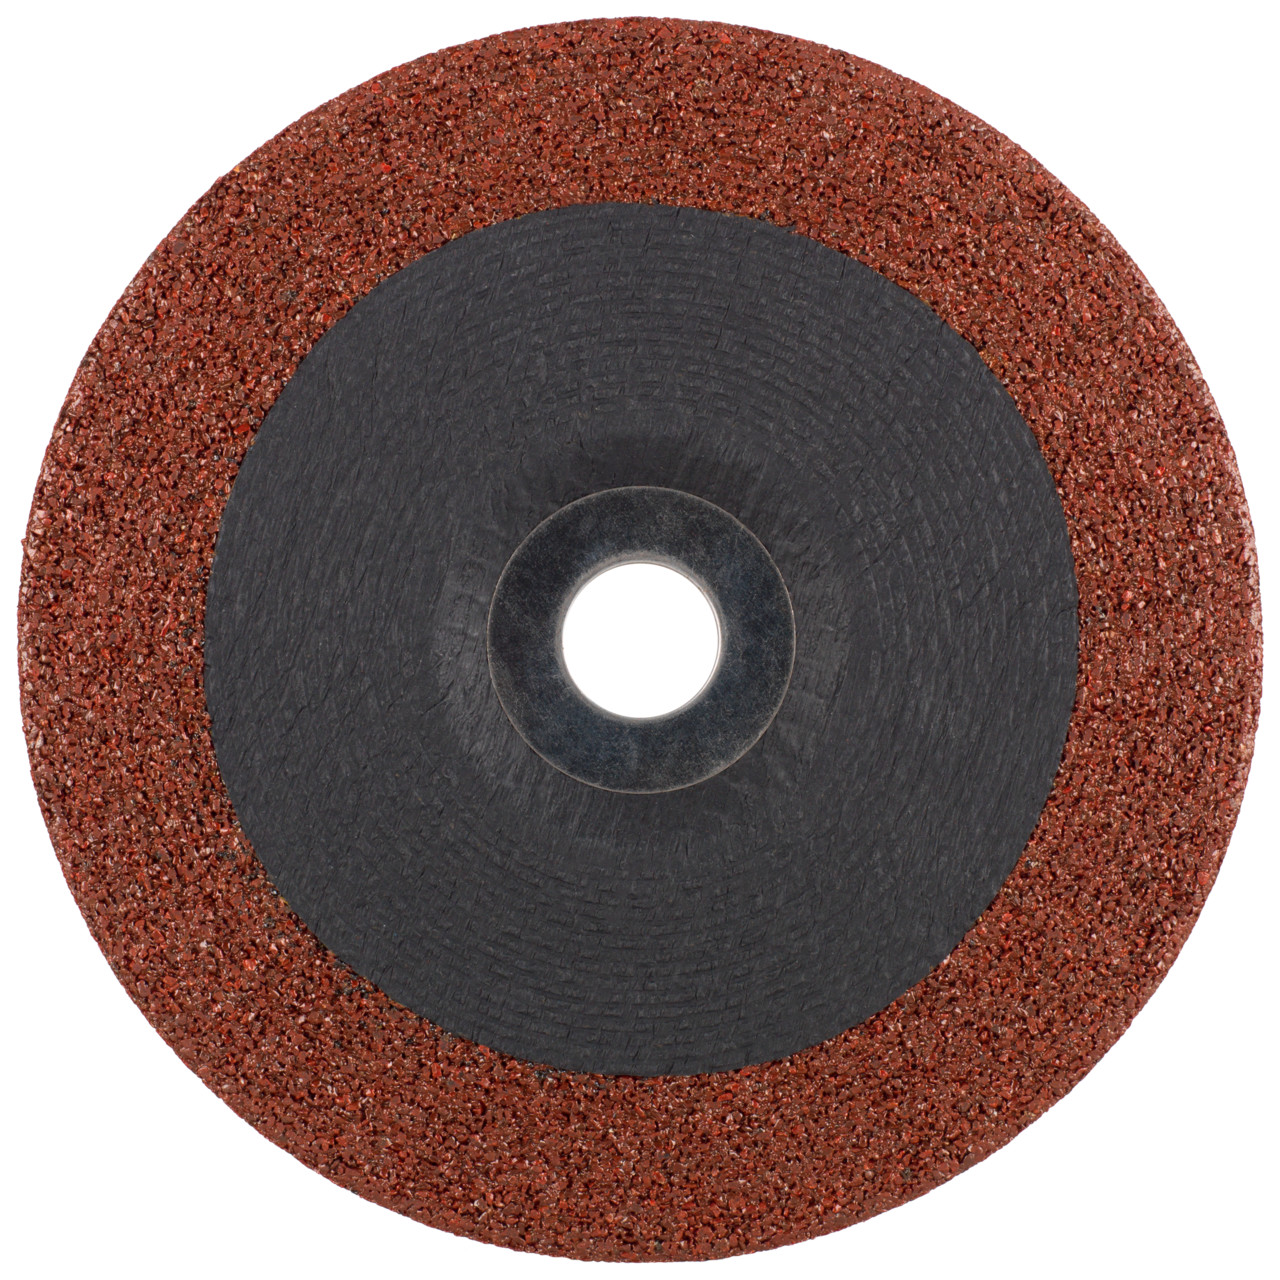 TYROLIT disco de desbaste DxUxH 125x7x22,23 3en1 para acero y acero inoxidable y fundición, forma: 27 - versión offset, Art. 466749